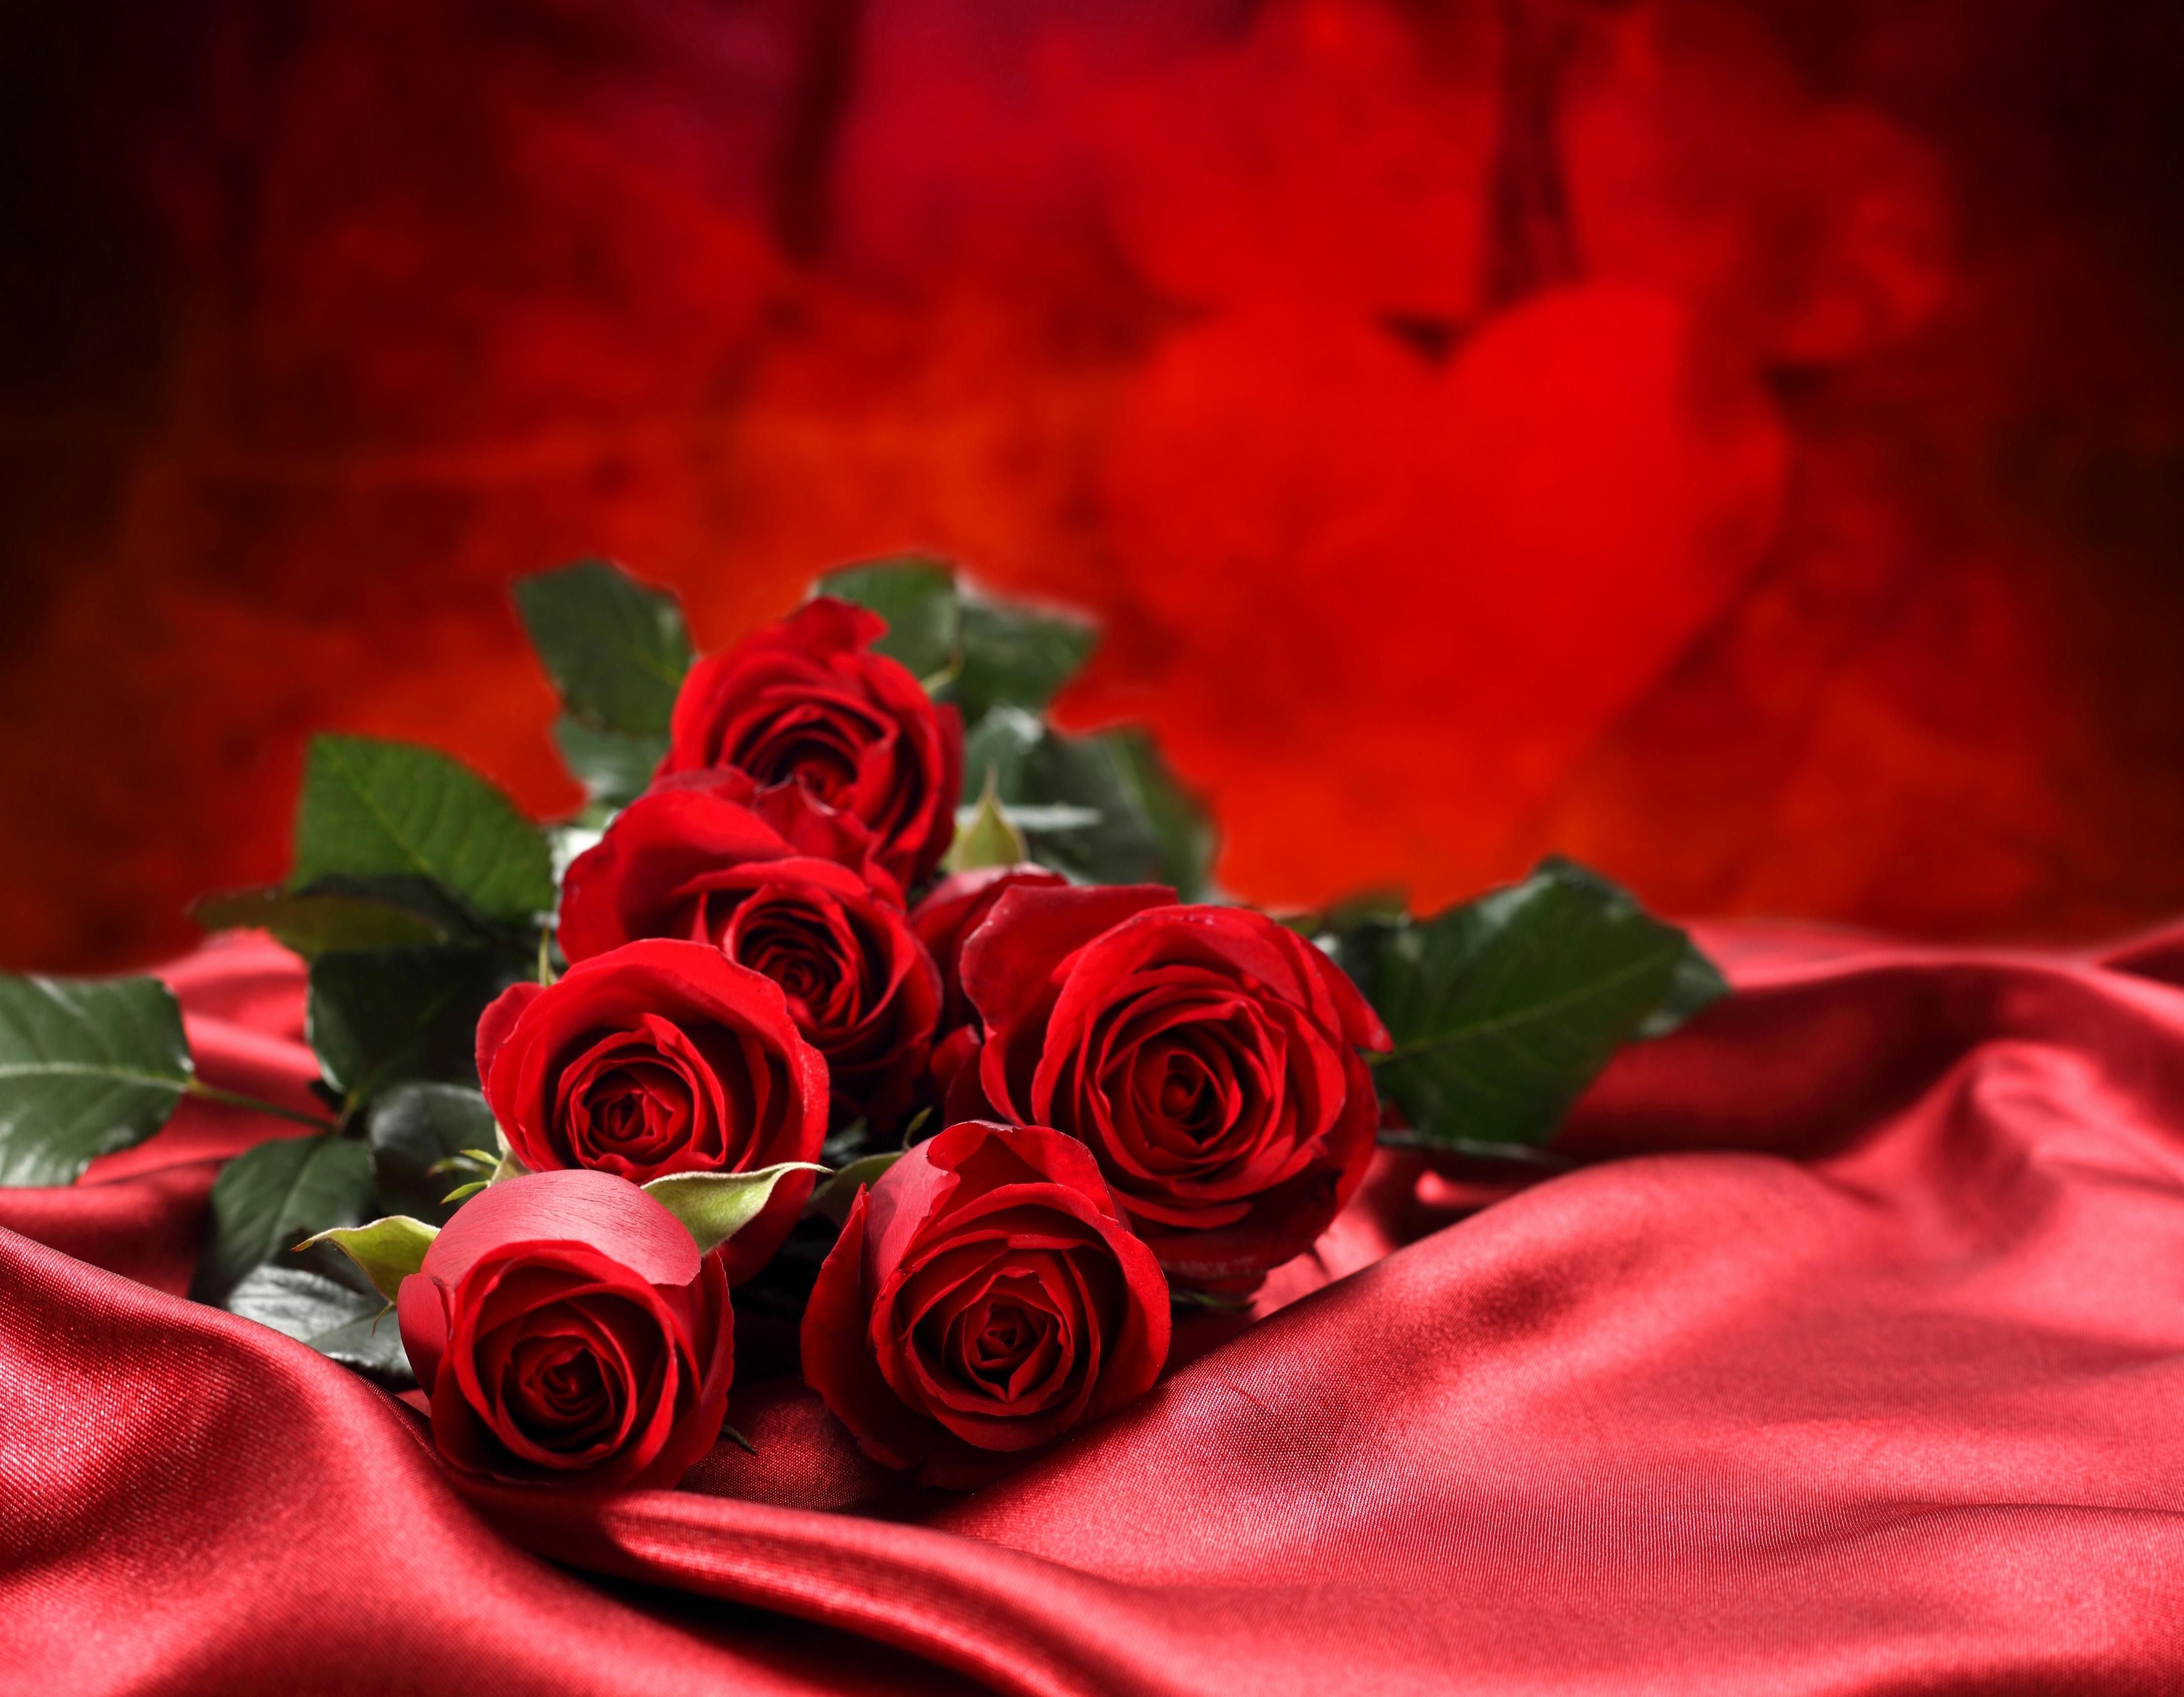 Hình nền hoa hồng đỏ 4350x3380 - Bó hoa tình yêu hoa hồng đỏ